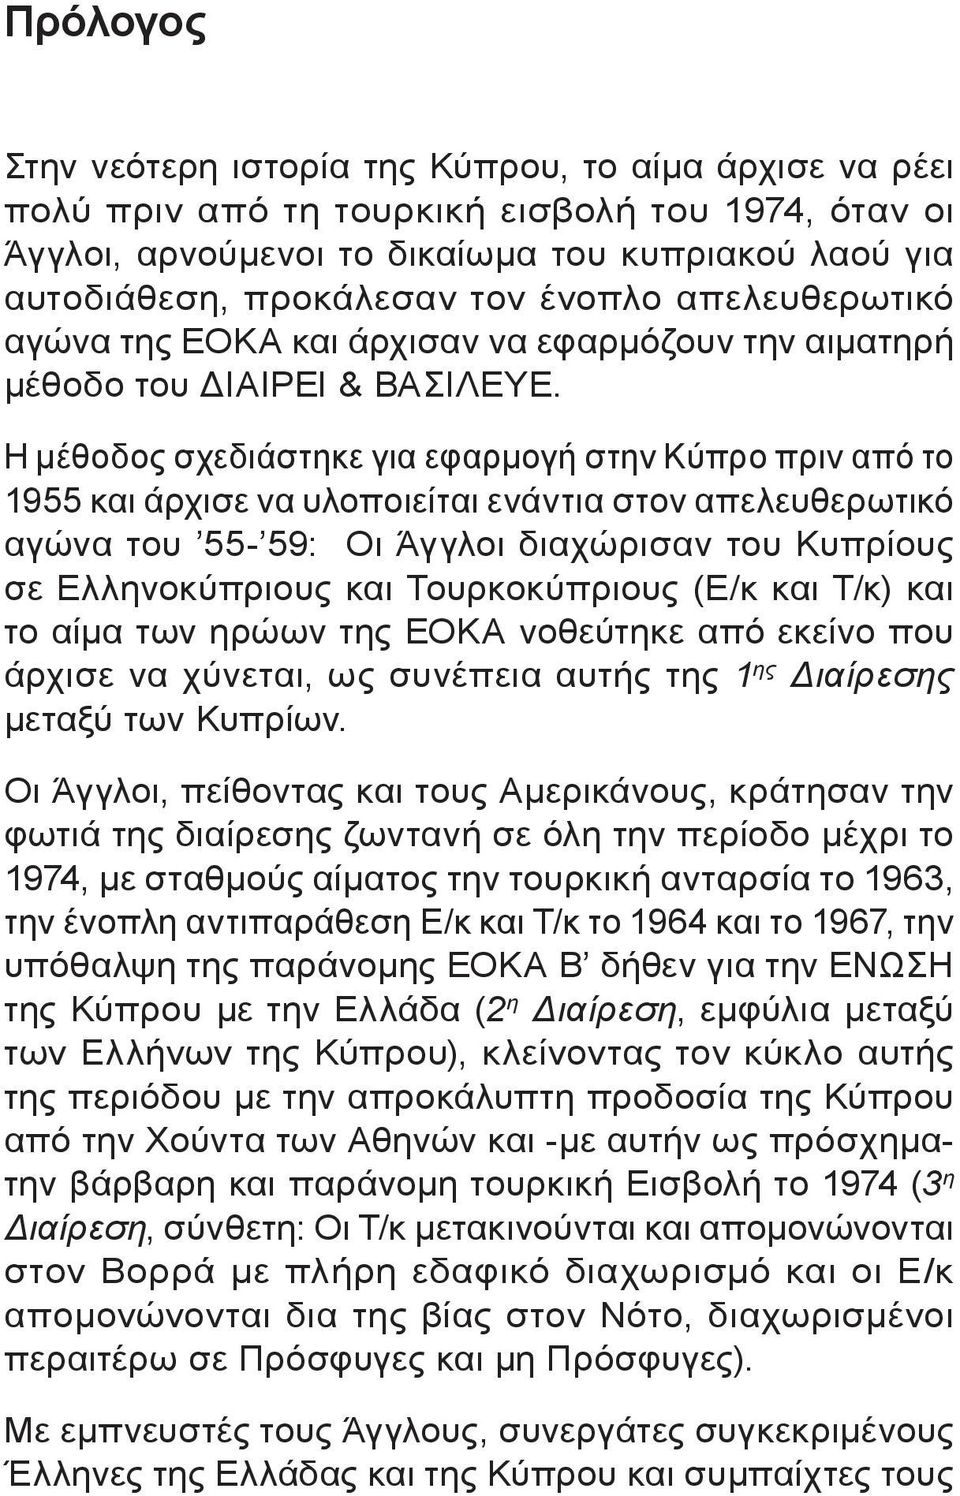 Η μέθοδος σχεδιάστηκε για εφαρμογή στην Κύπρο πριν από το 1955 και άρχισε να υλοποιείται ενάντια στον απελευθερωτικό αγώνα του 55-59: Οι Άγγλοι διαχώρισαν του Κυπρίους σε Ελληνοκύπριους και